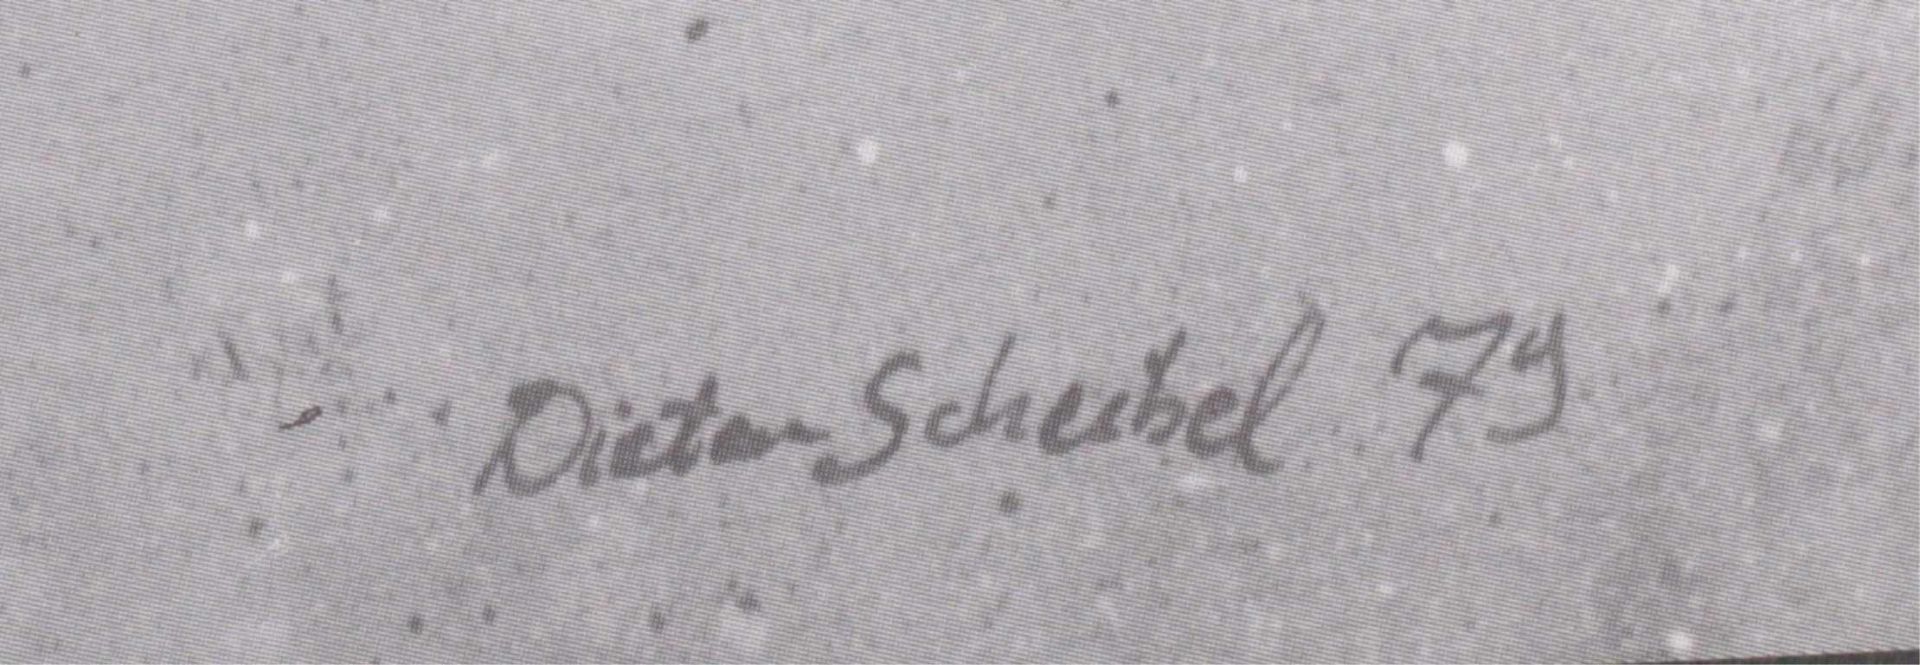 Plakat, Dieter ScheibelUnten rechts mit Bleistift signiert und datiertDieter Scheibel 79, ca. 79 x - Bild 2 aus 2